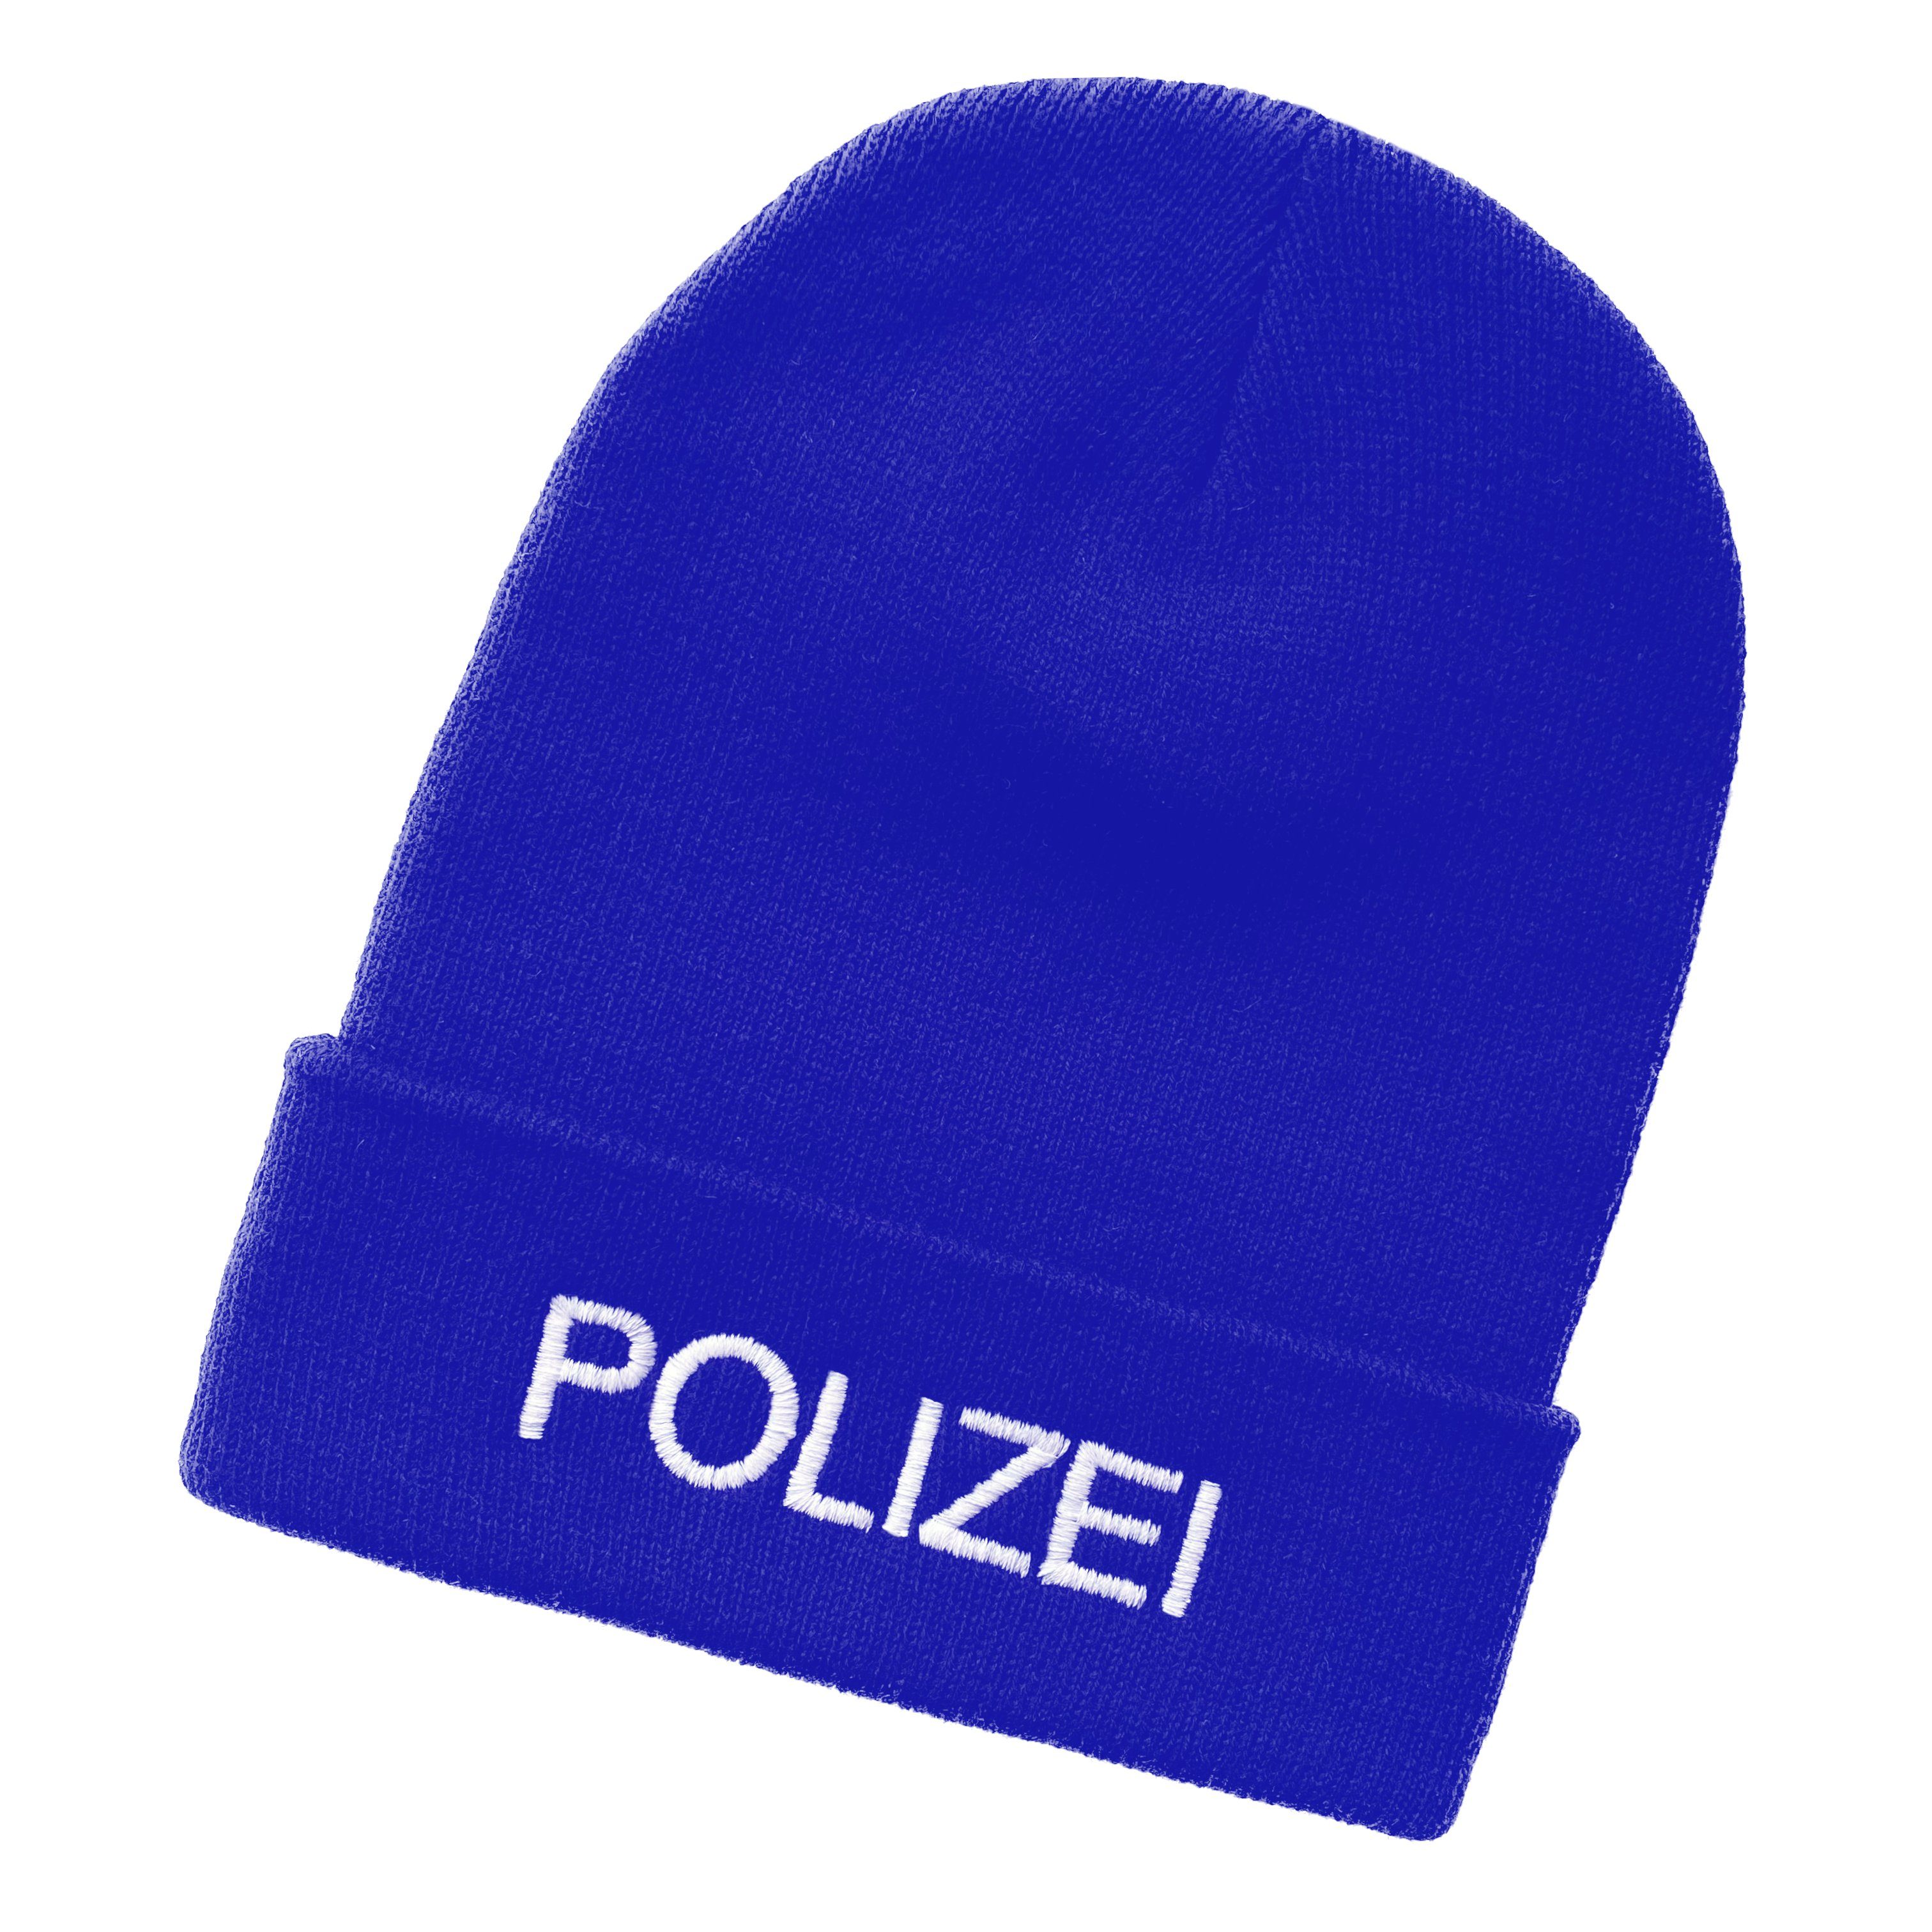 Schnoschi Strickmütze Strickmütze mit breiten Umschlag (Beanie Mütze) mit Polizei bestickt mit Umschlag blau